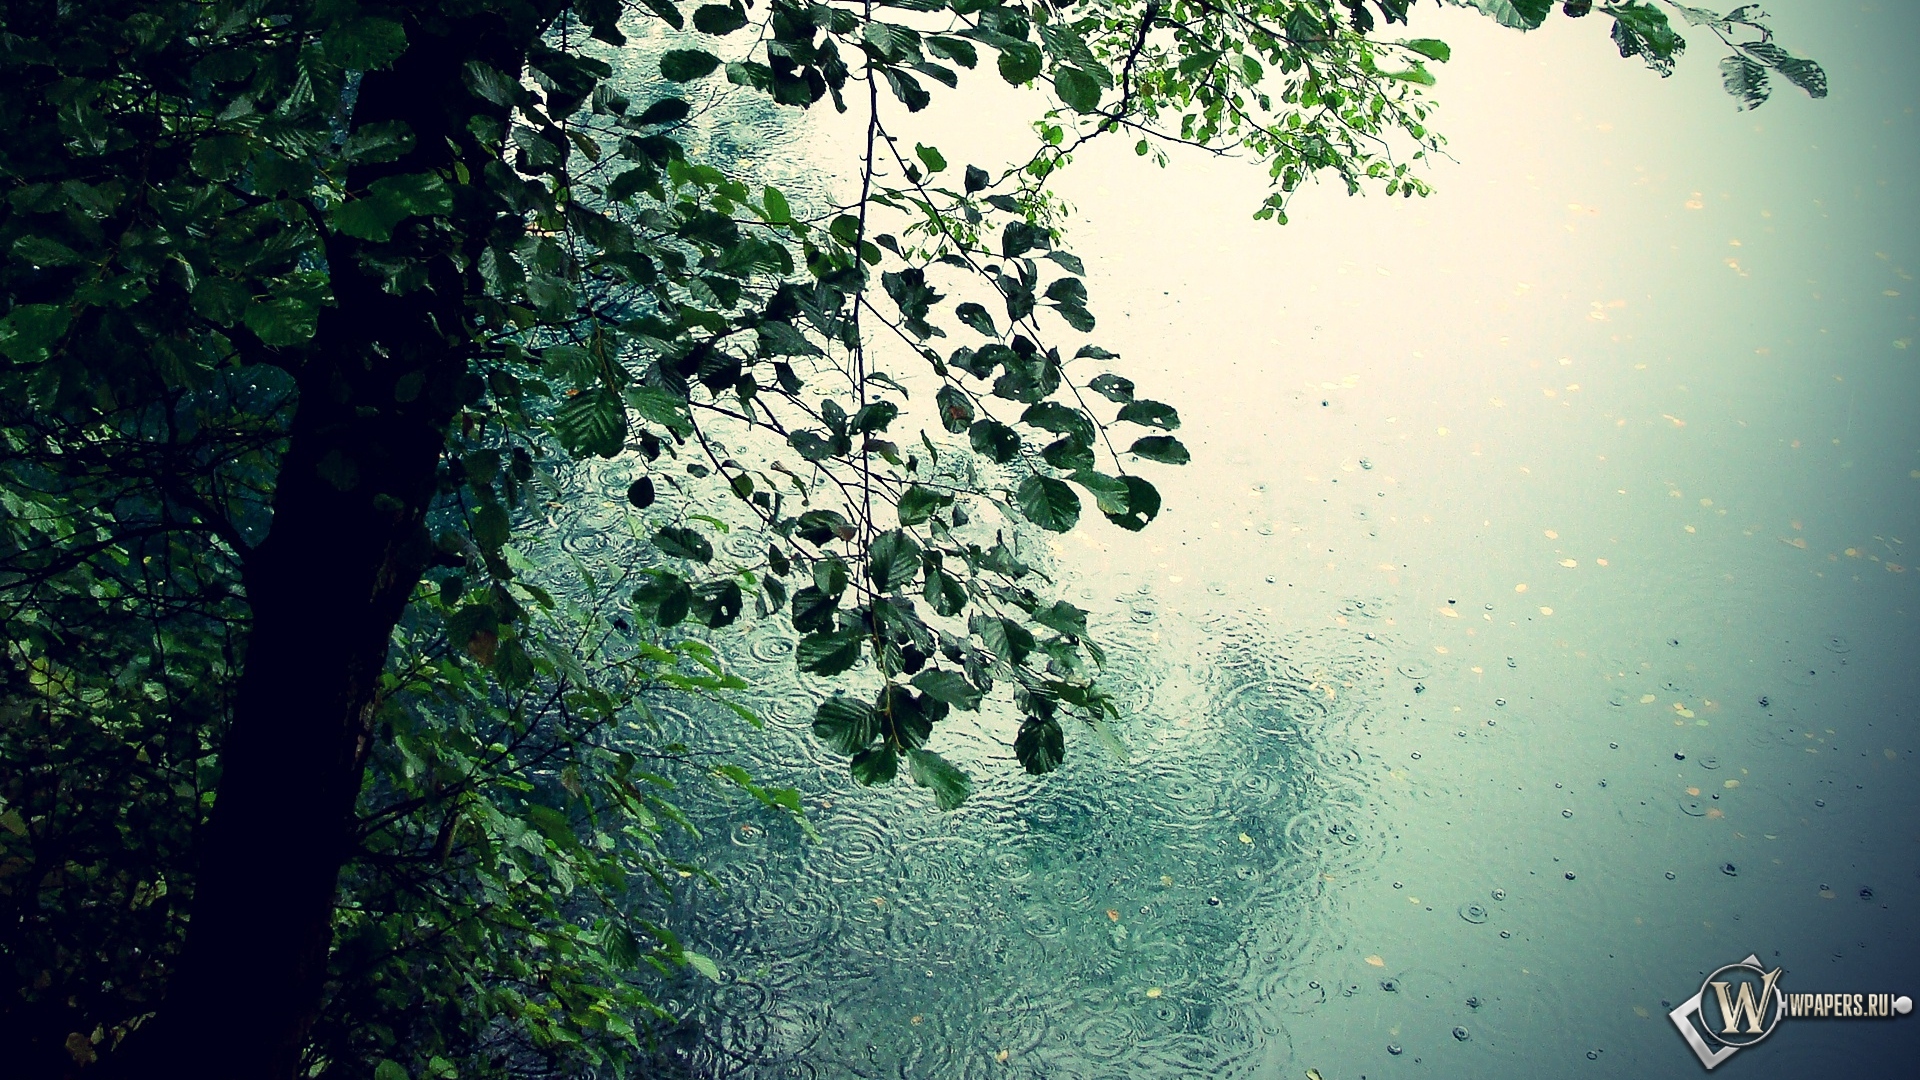 Дождь в лесу 1920x1080